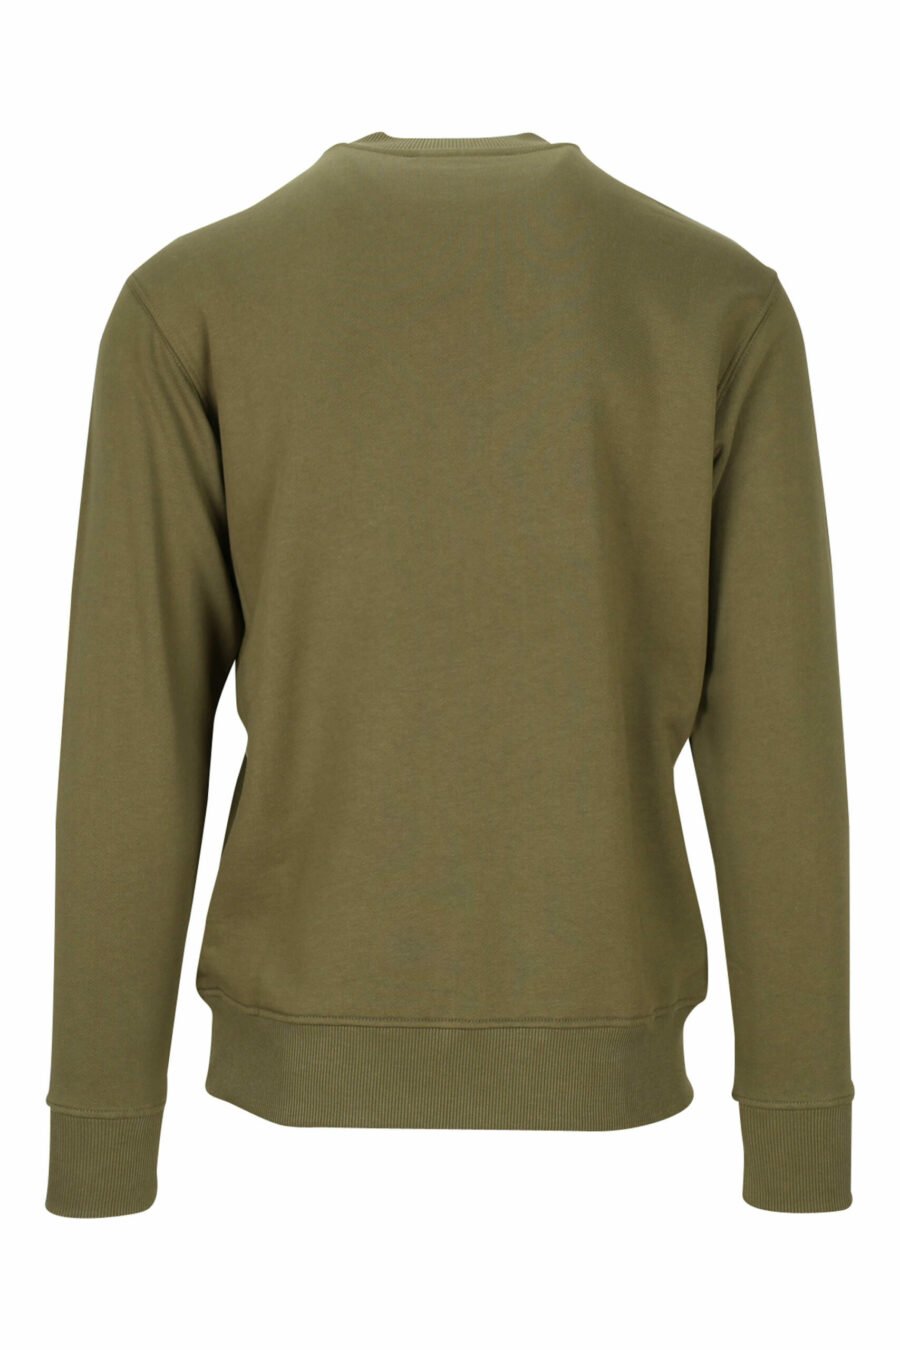 Militärgrünes Sweatshirt mit orangem "Stückzahl"-Maxilogo - 8052019469479 1 skaliert